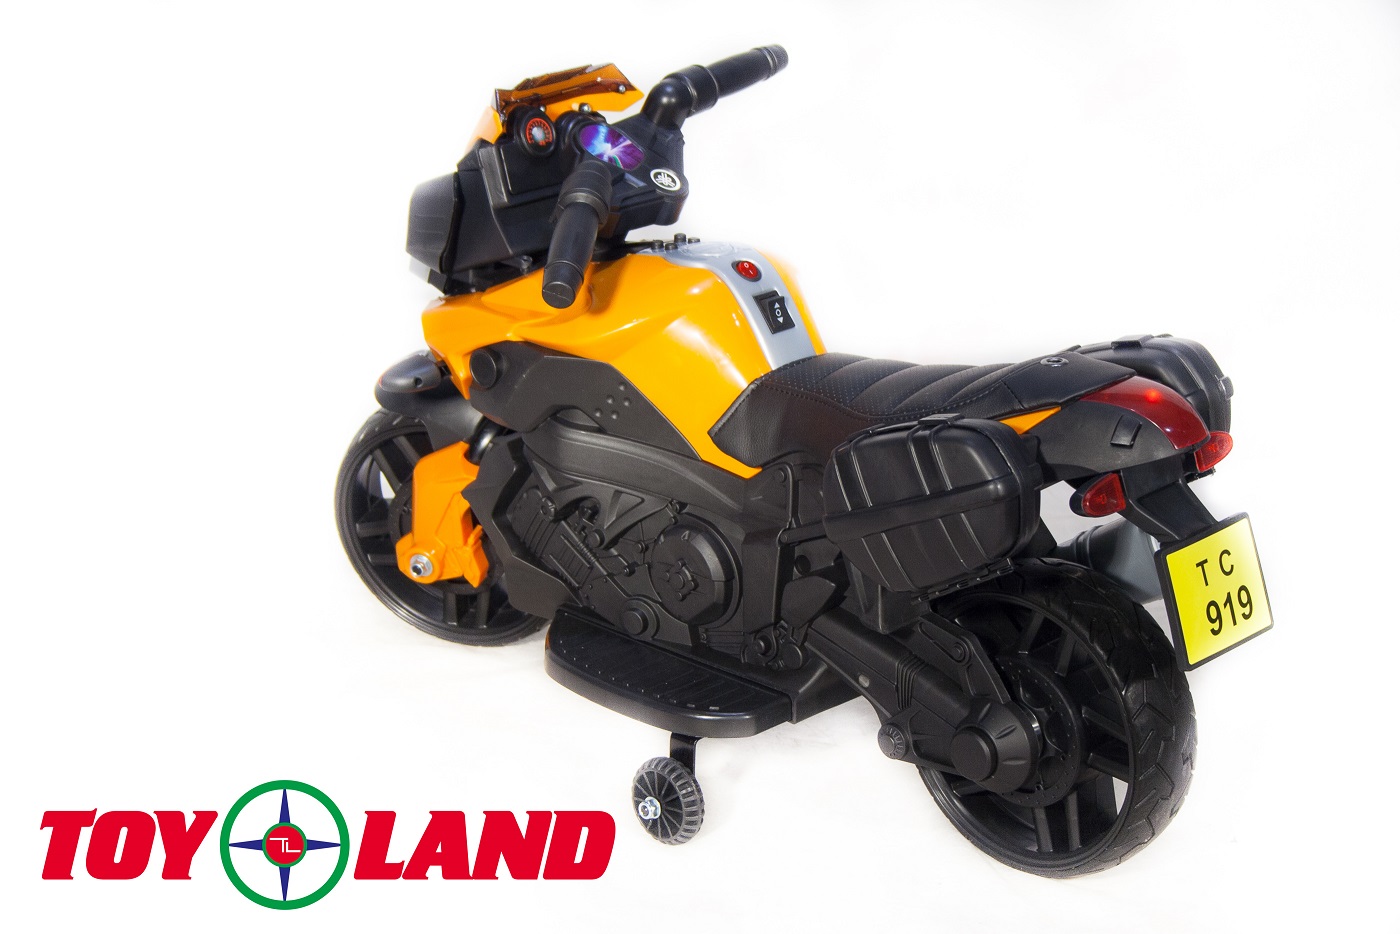 Электромотоцикл ToyLand jc919 оранжевого цвета  